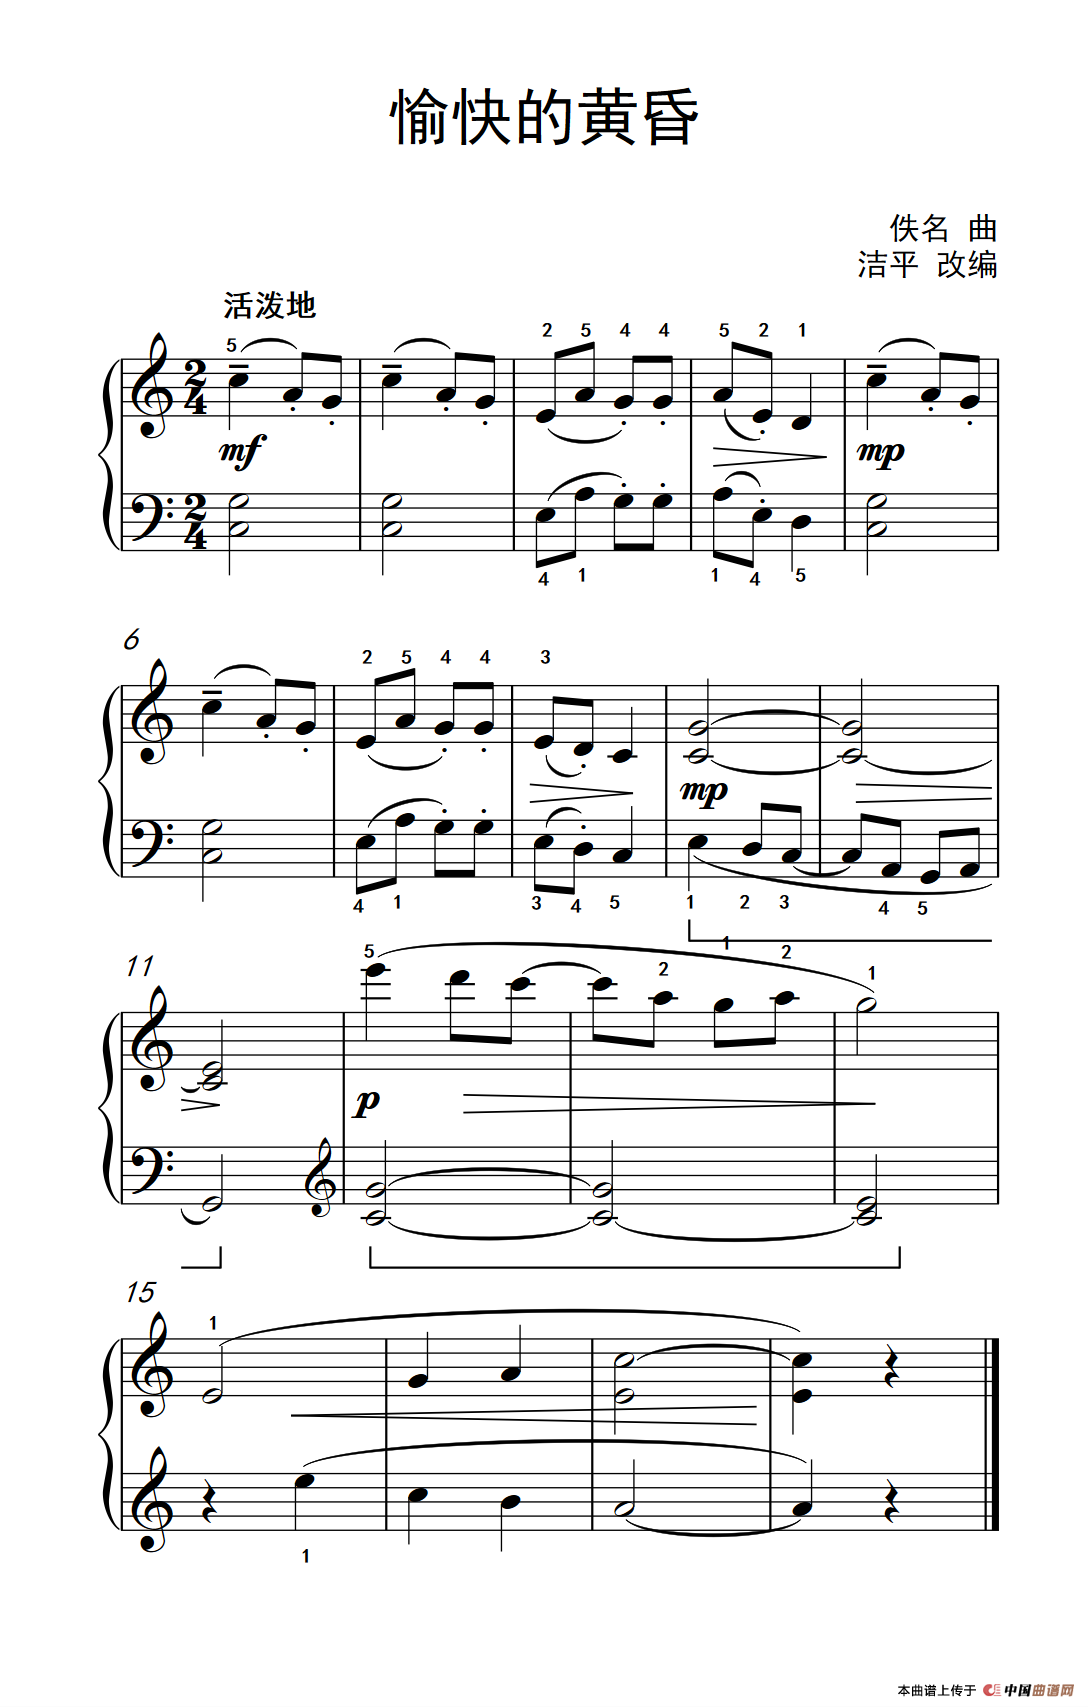 《愉快的黄昏》钢琴曲谱图分享